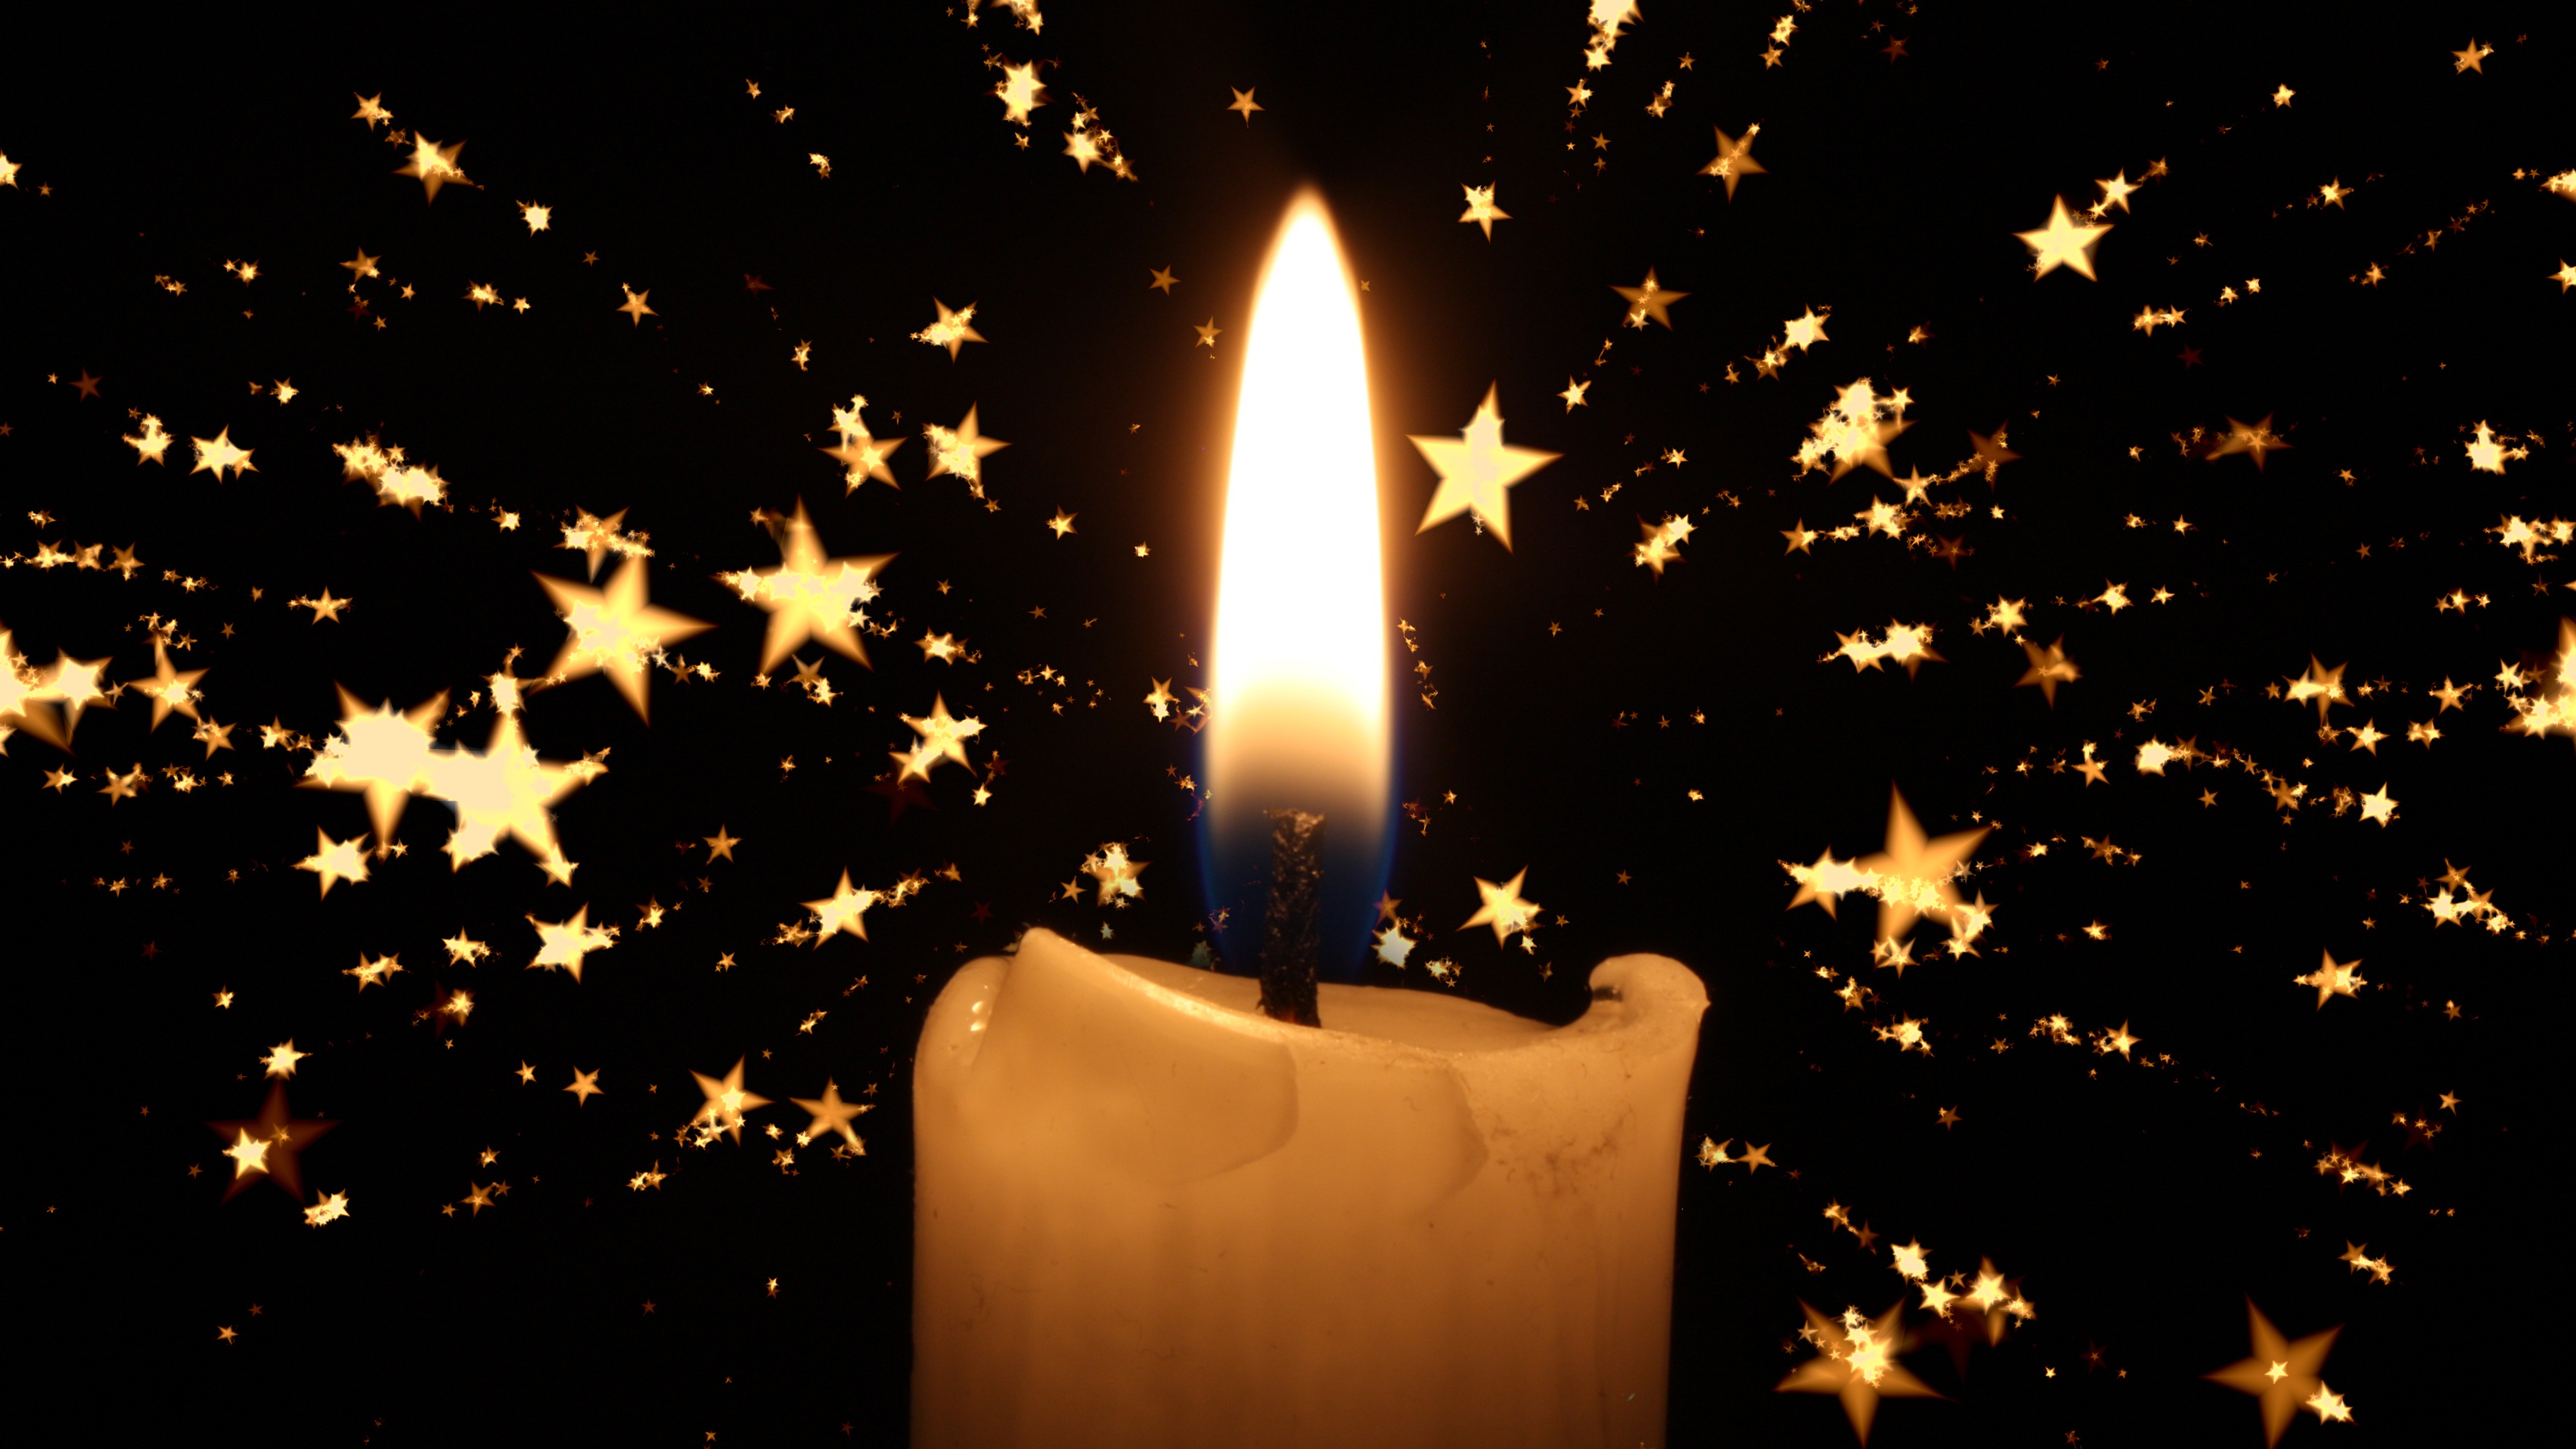 Бесплатное фото Пламя свечи со звездами